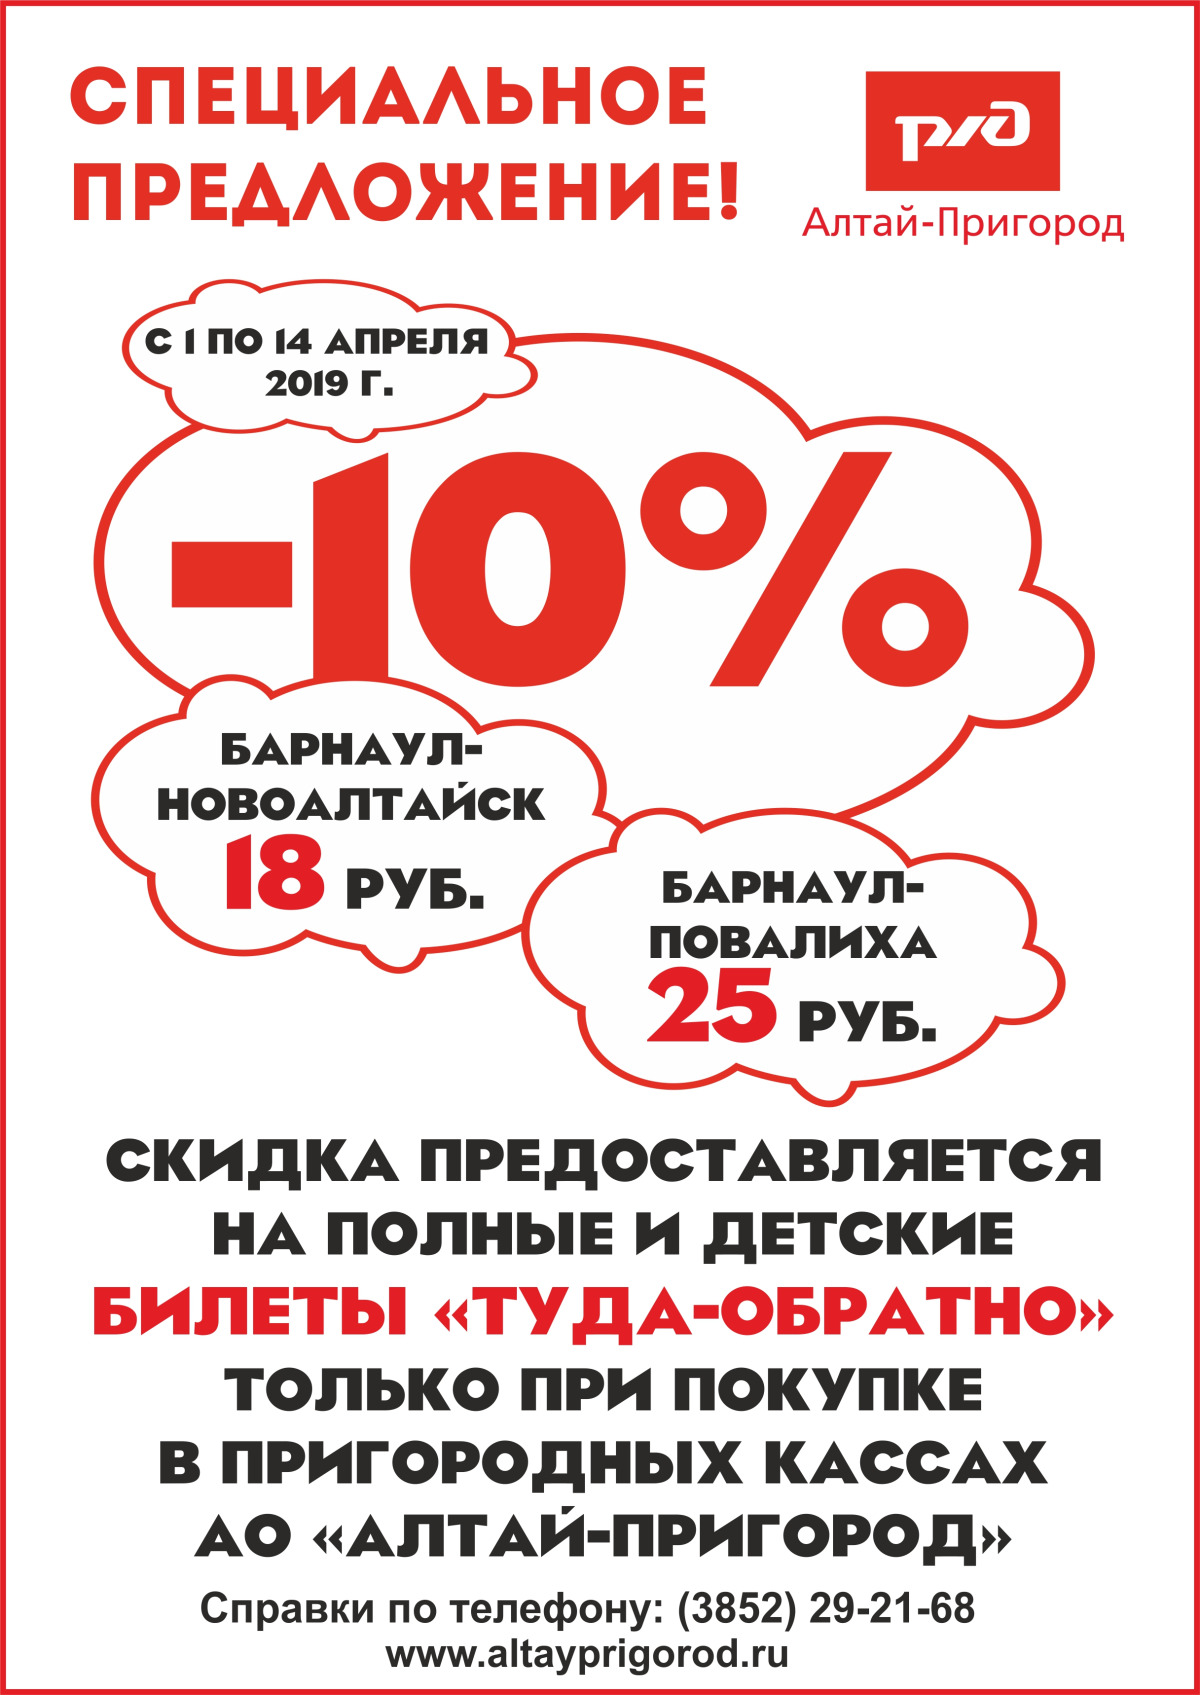 Специальное предложение! -10% на полные и детские билеты туда-обратно с 12 по 31 марта АО «Алтай-Пригород»